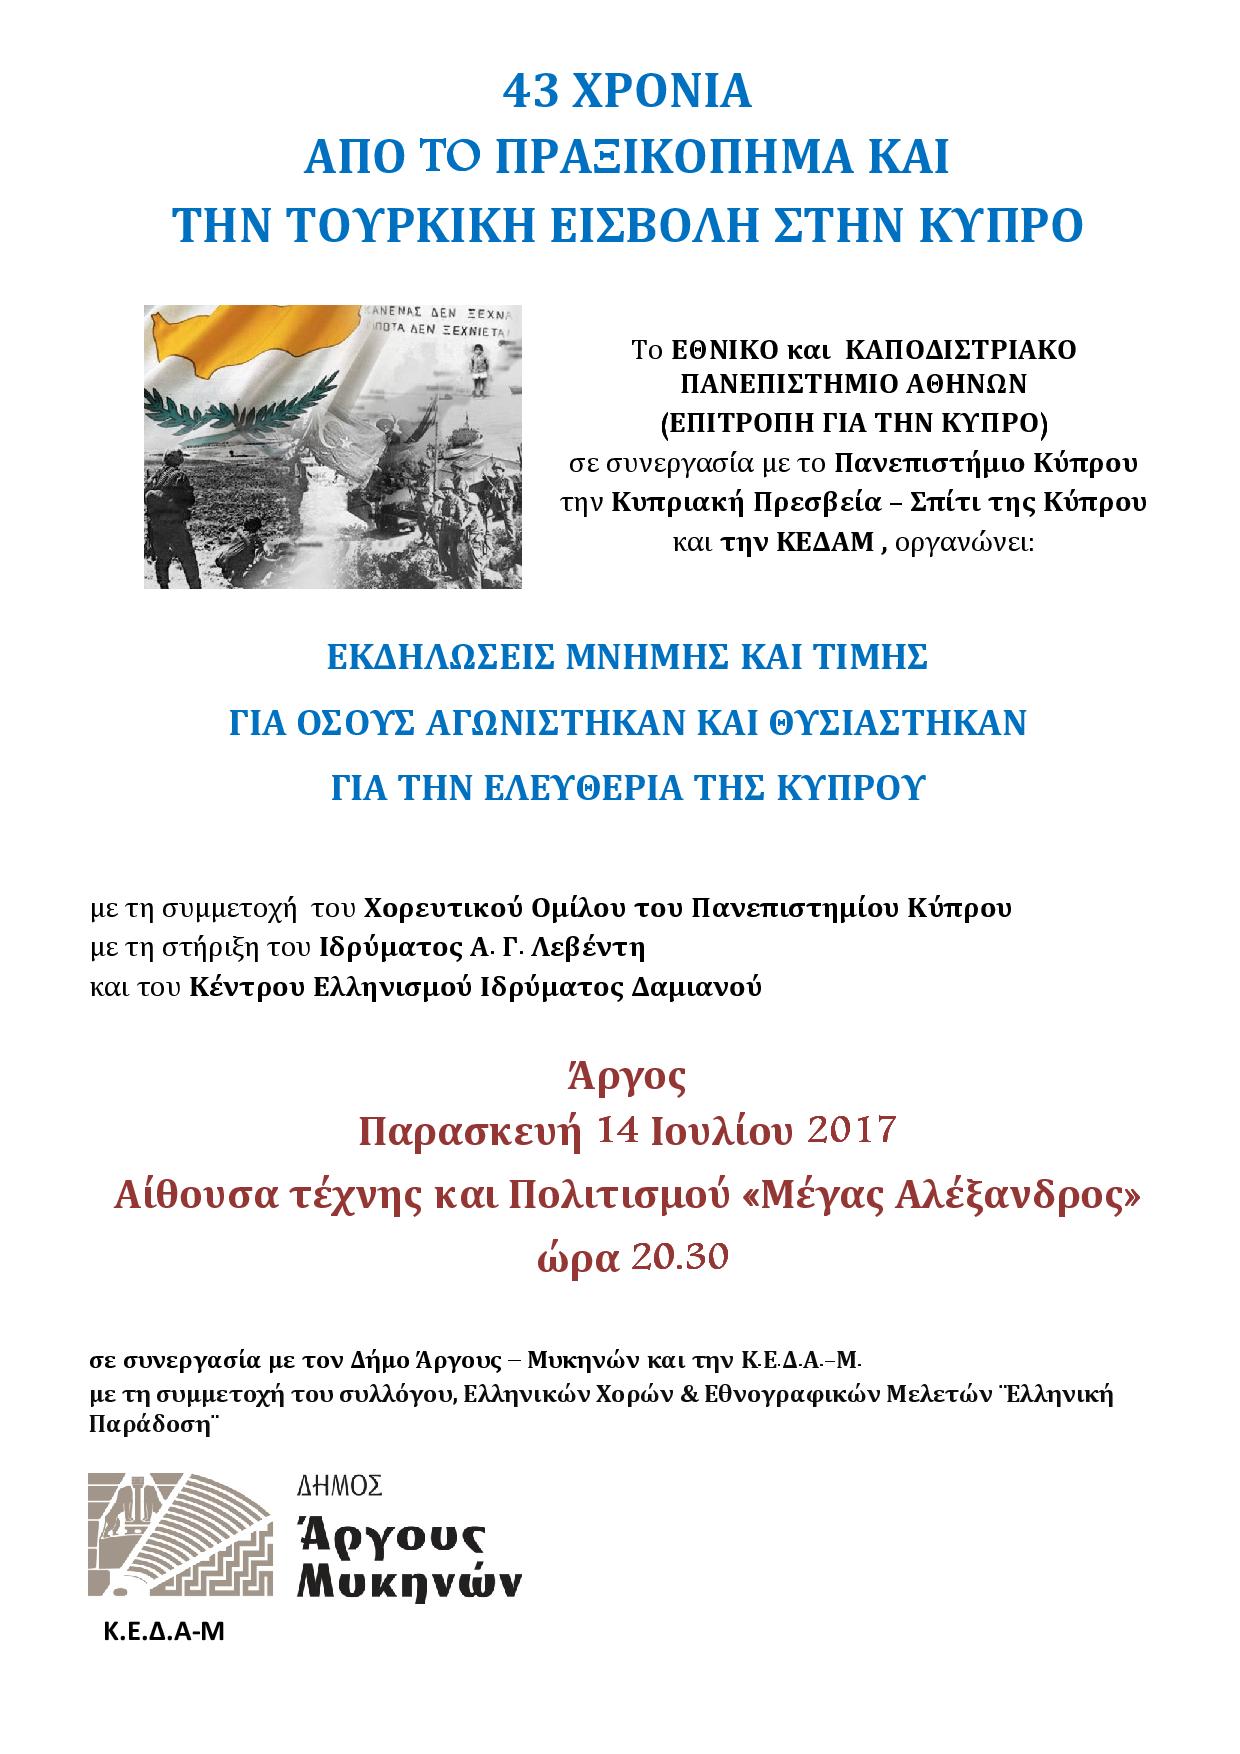 Εκδήλωση μνήμης για τους αγωνιστές της Κύπρου στο Άργος